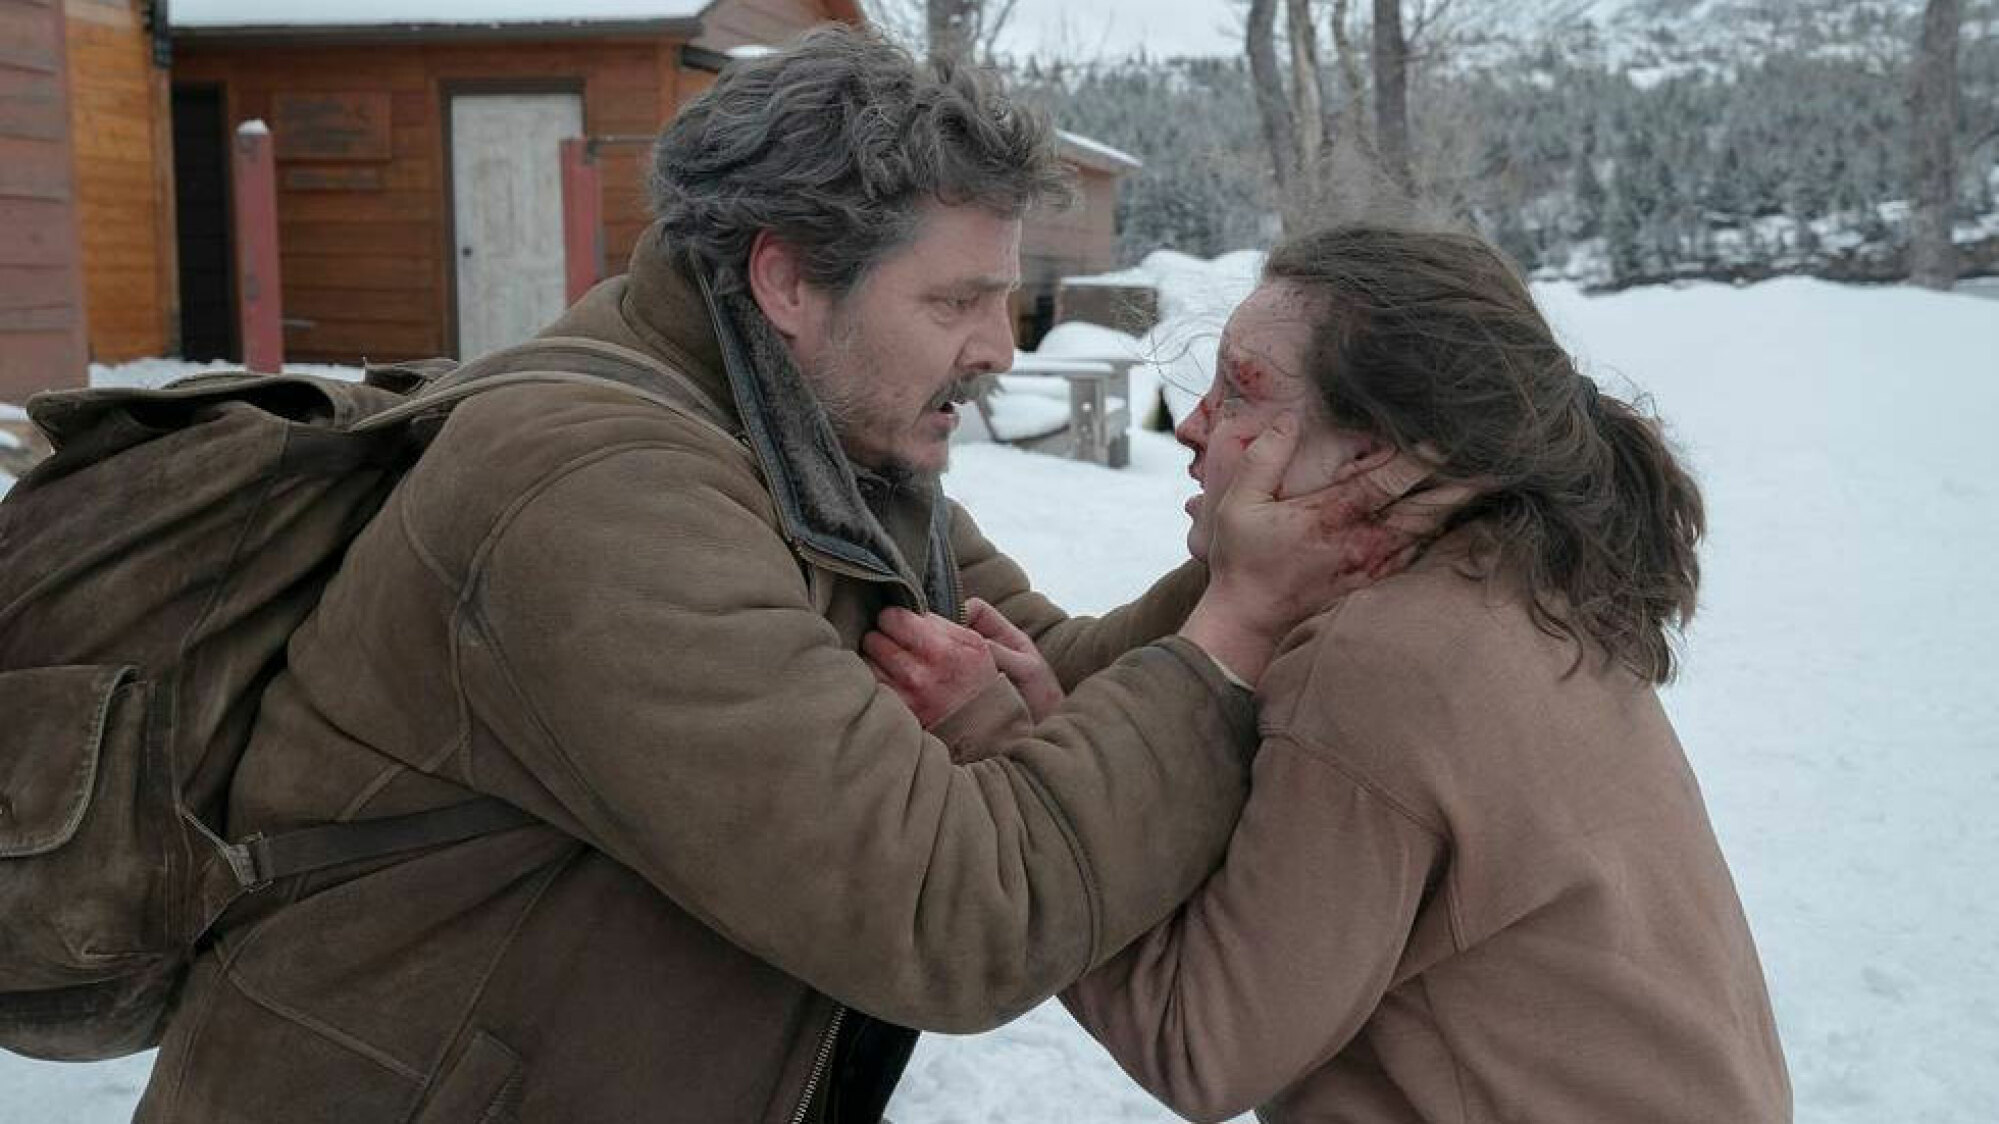 Un homme dehors dans la neige berce le visage d'une jeune fille blessée.